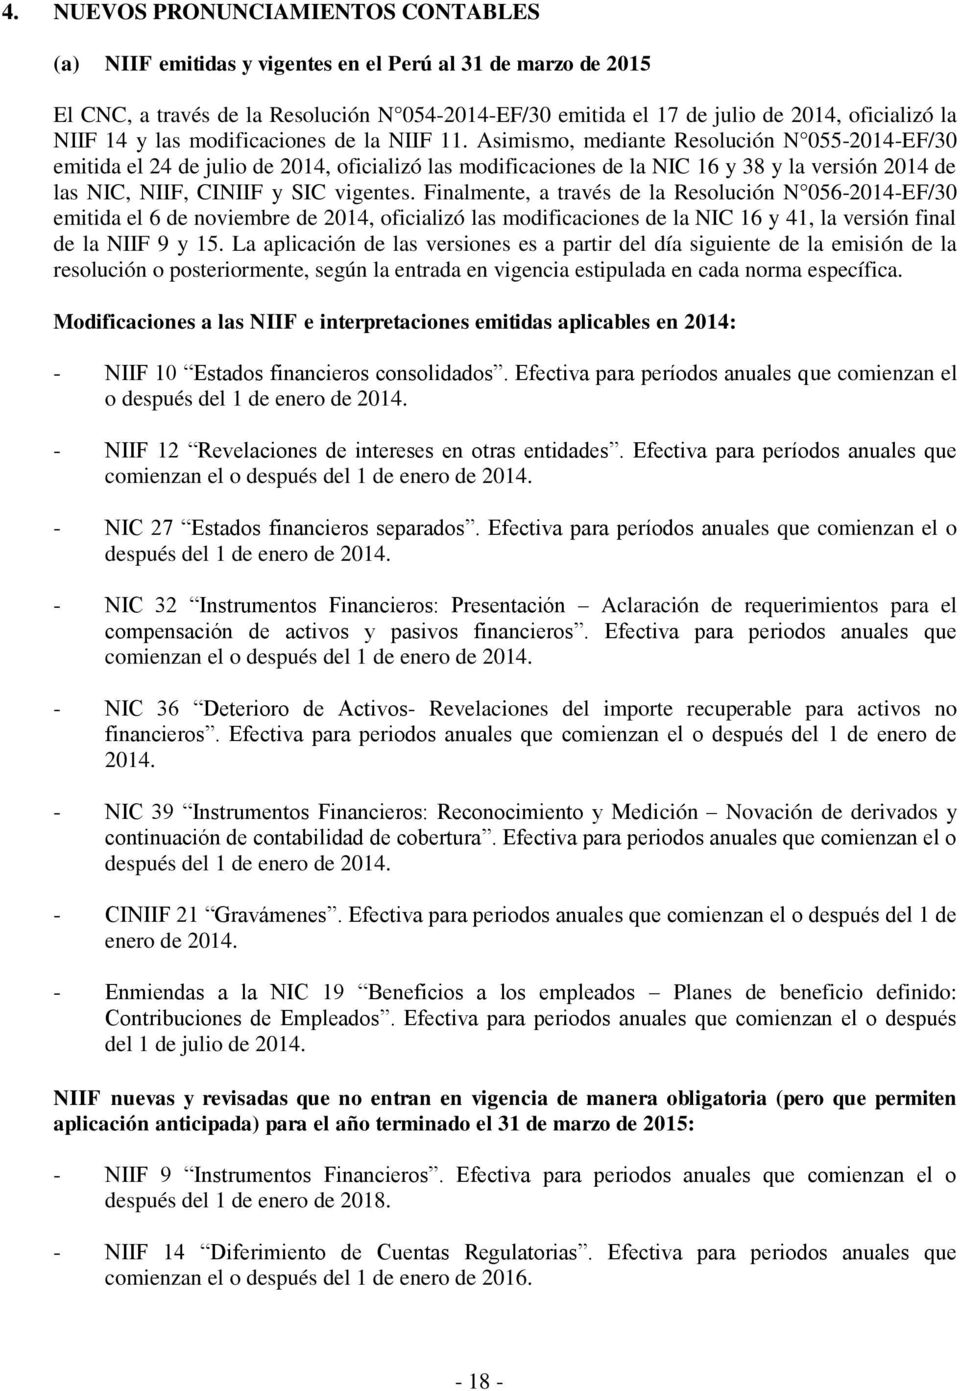 Asimismo, mediante Resolución N 055-2014-EF/30 emitida el 24 de julio de 2014, oficializó las modificaciones de la NIC 16 y 38 y la versión 2014 de las NIC, NIIF, CINIIF y SIC vigentes.